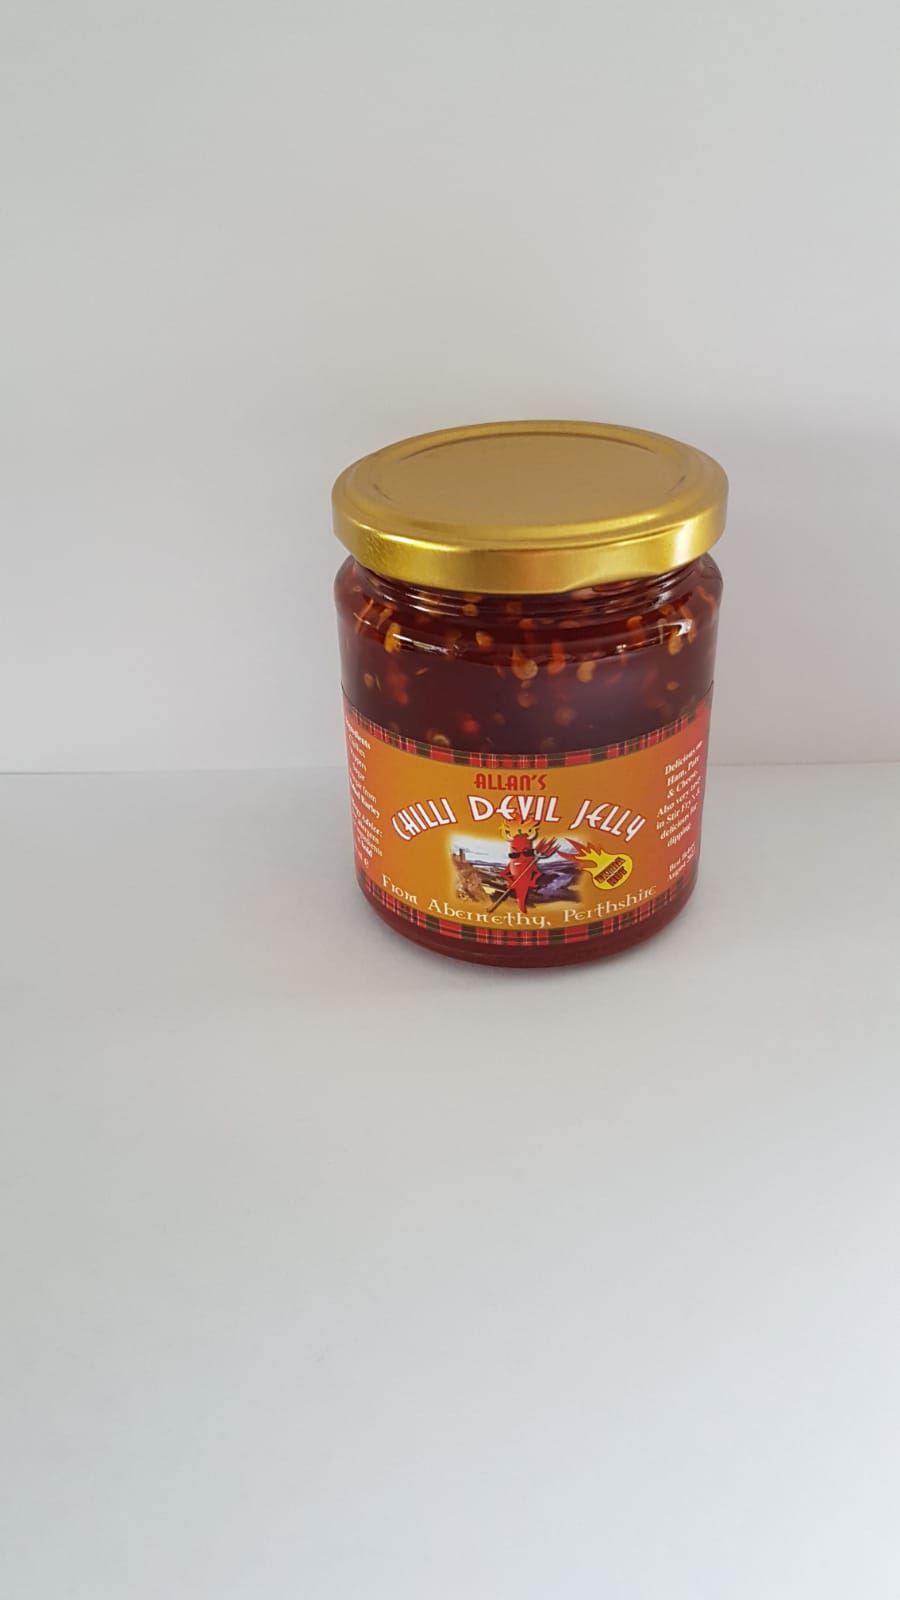 Allan's Devil Hot Chilli Jelly Savoury Jellies & Ja